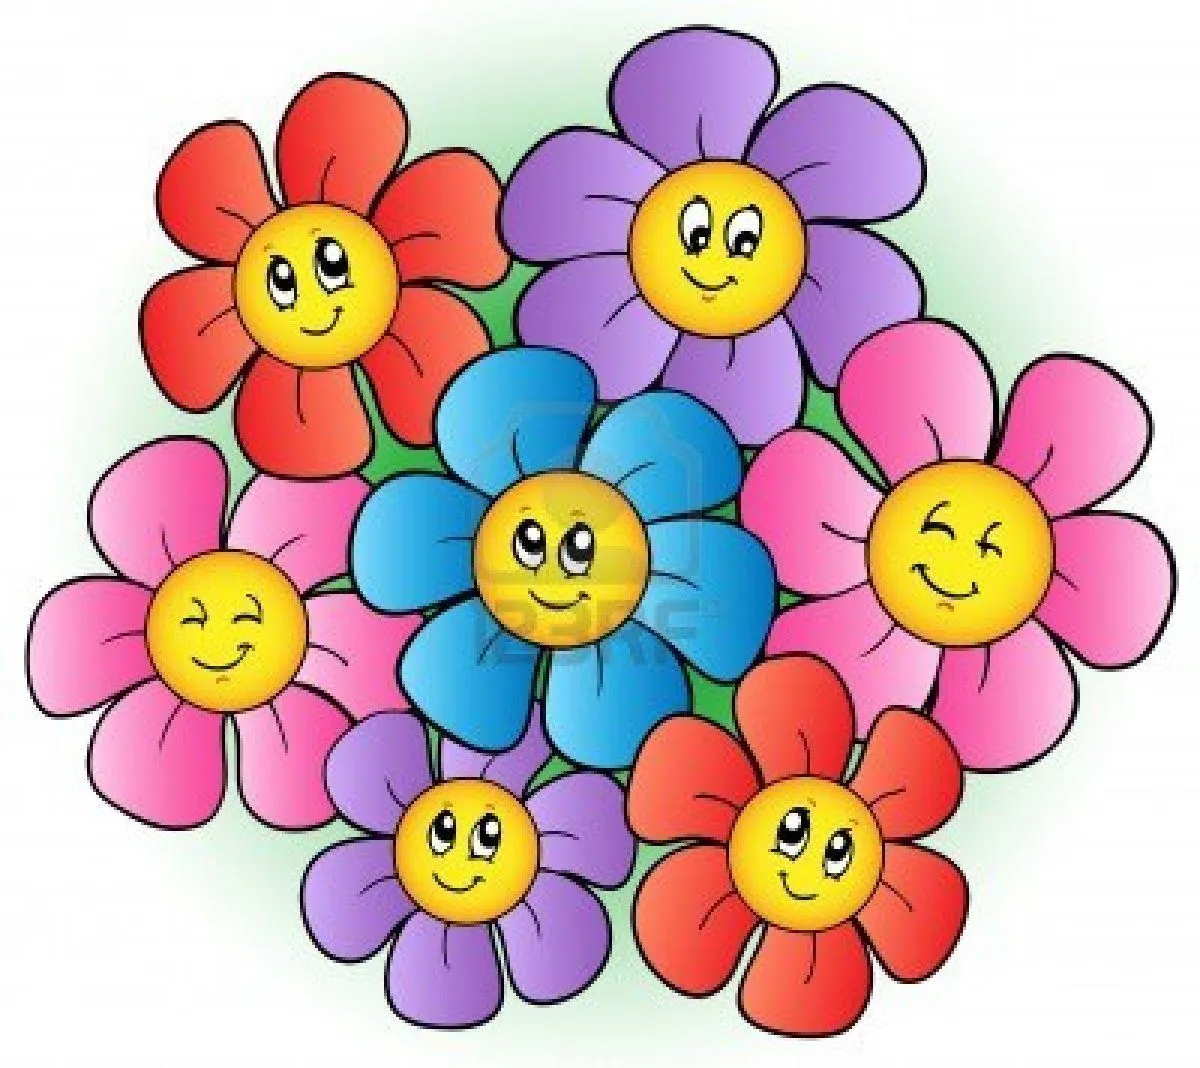 Grupo de dibujos animados de flores Foto de archivo - 9528300 ...